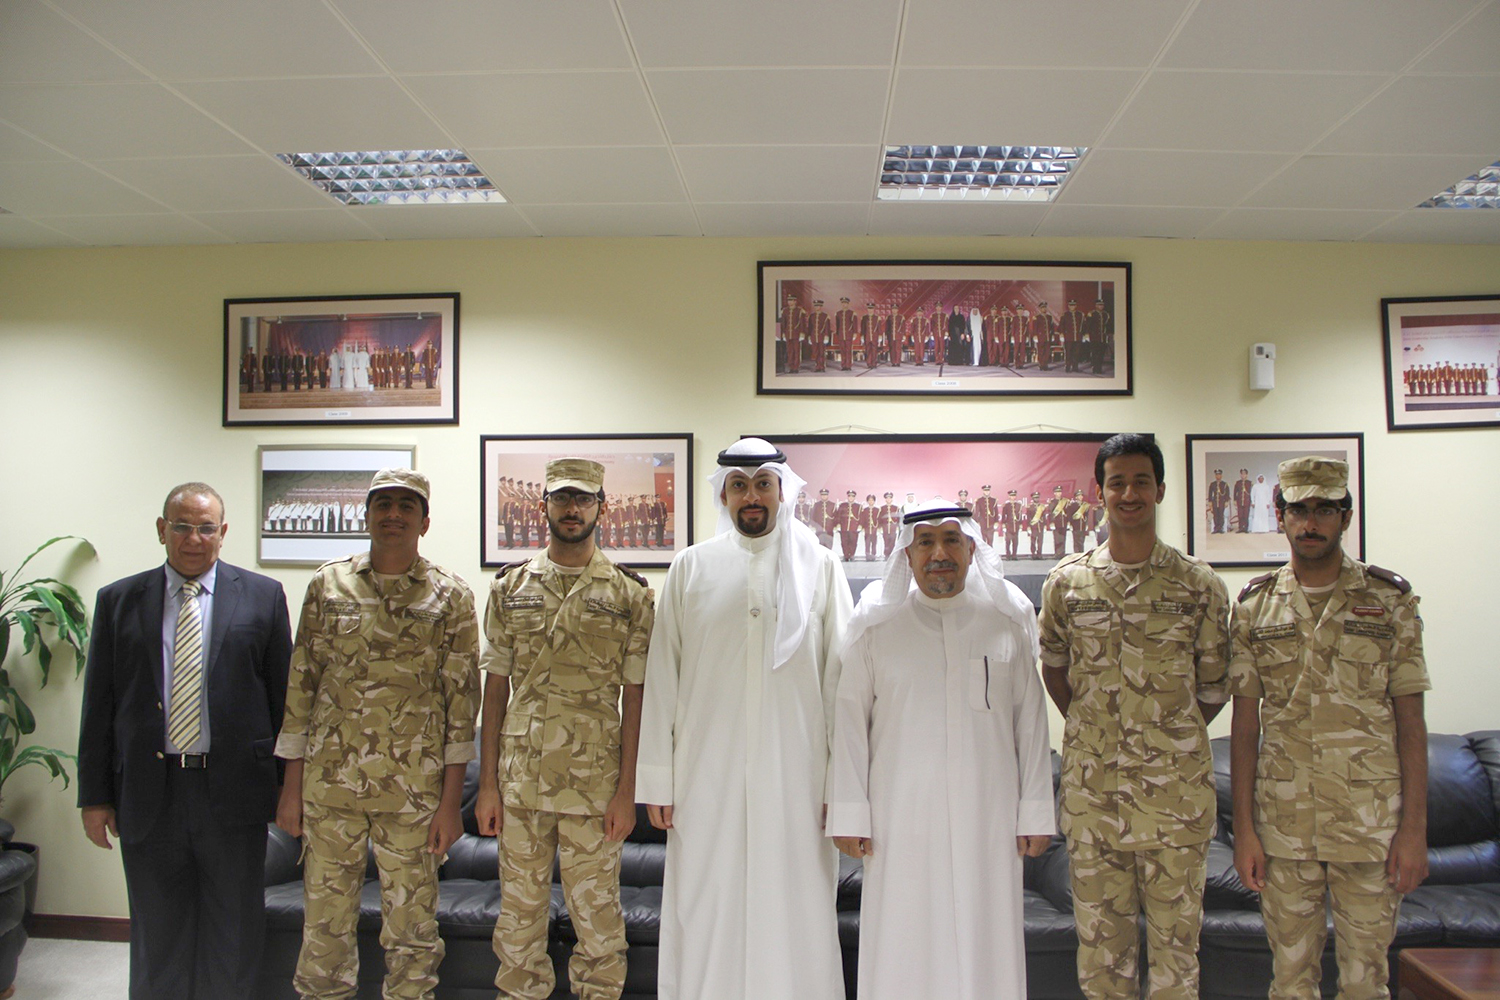 سفير دولة الكويت لدى قطر حفيظ محمد العجمي مع الطلبة الكويتين في اكاديمية قطر للقادة